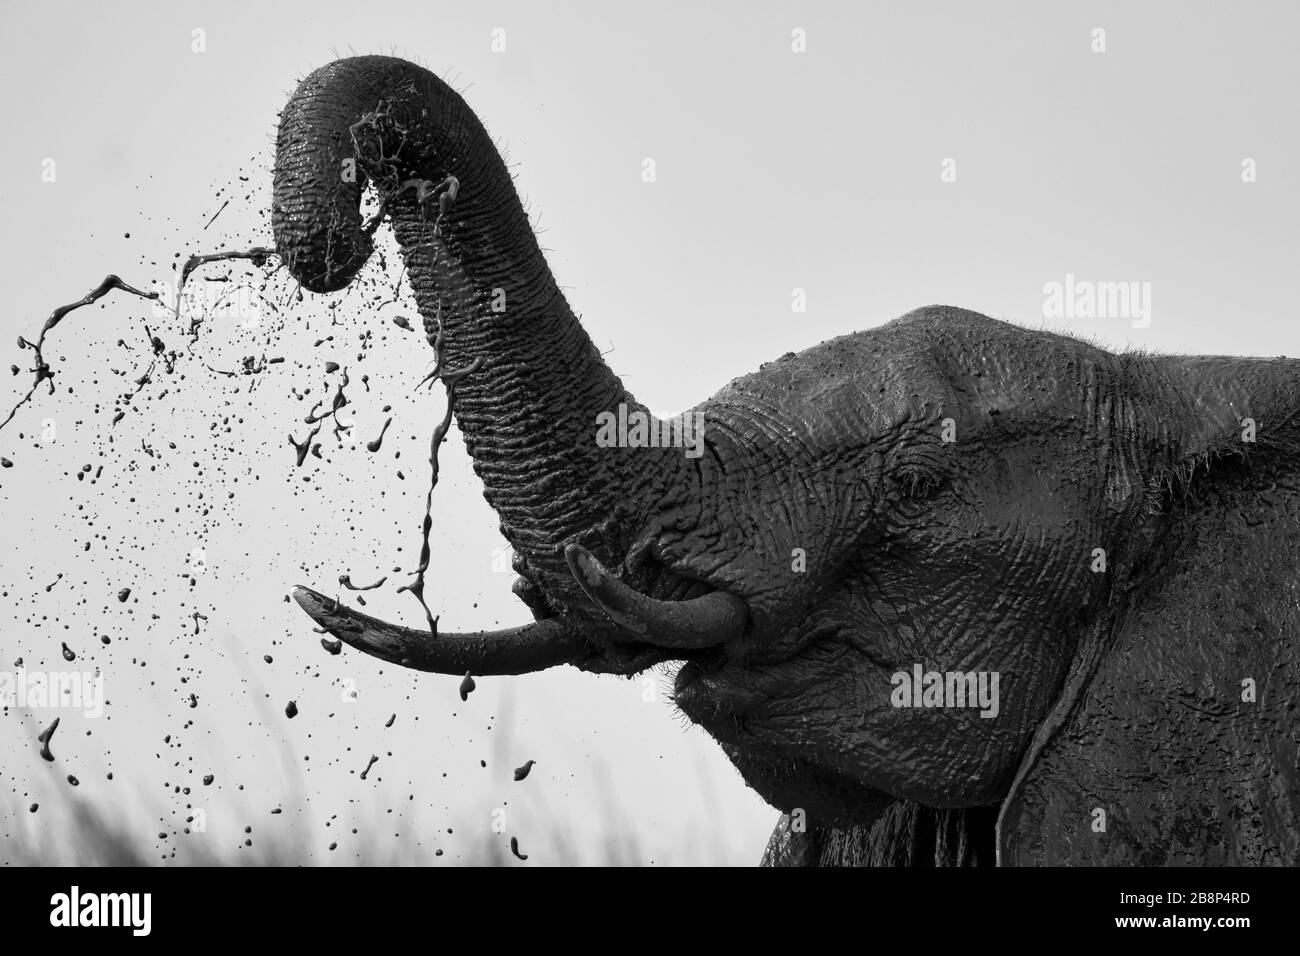 elephant slinging mud Stock Photo